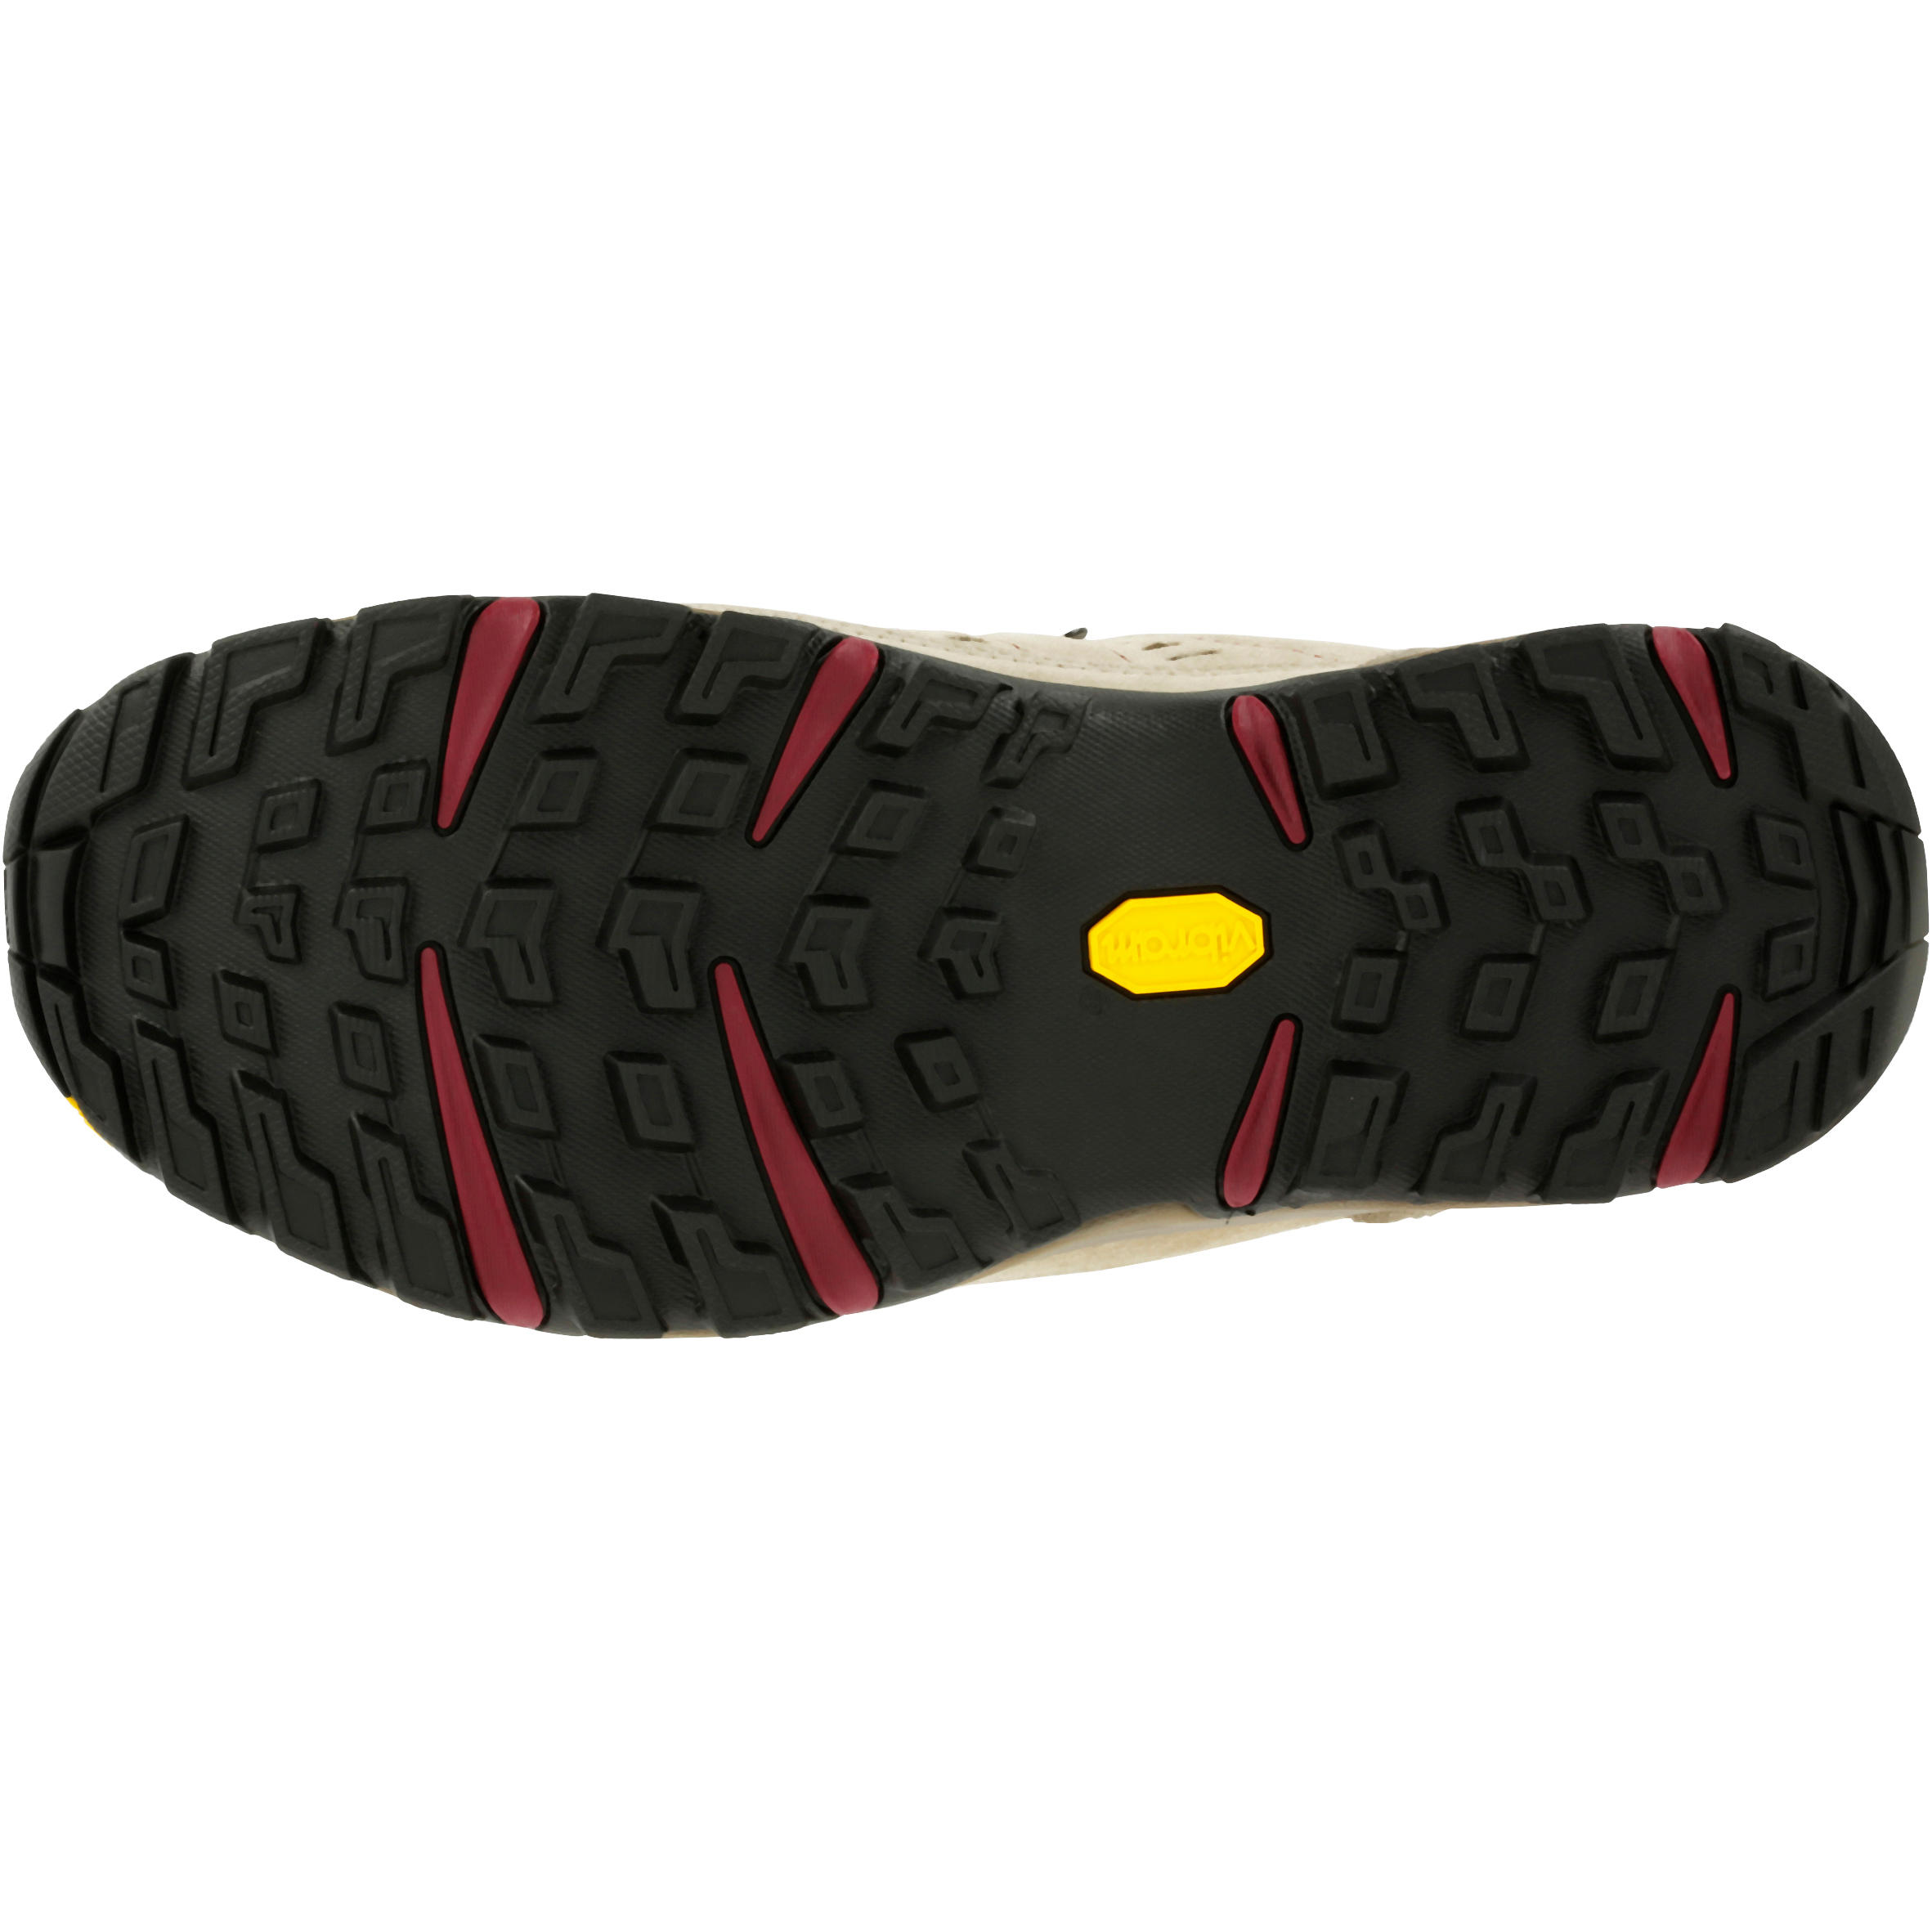 Waterproof Trekking Shoes - GORETEX - VIBRAM-TECNICA STARCROSS - W Beige 5/13